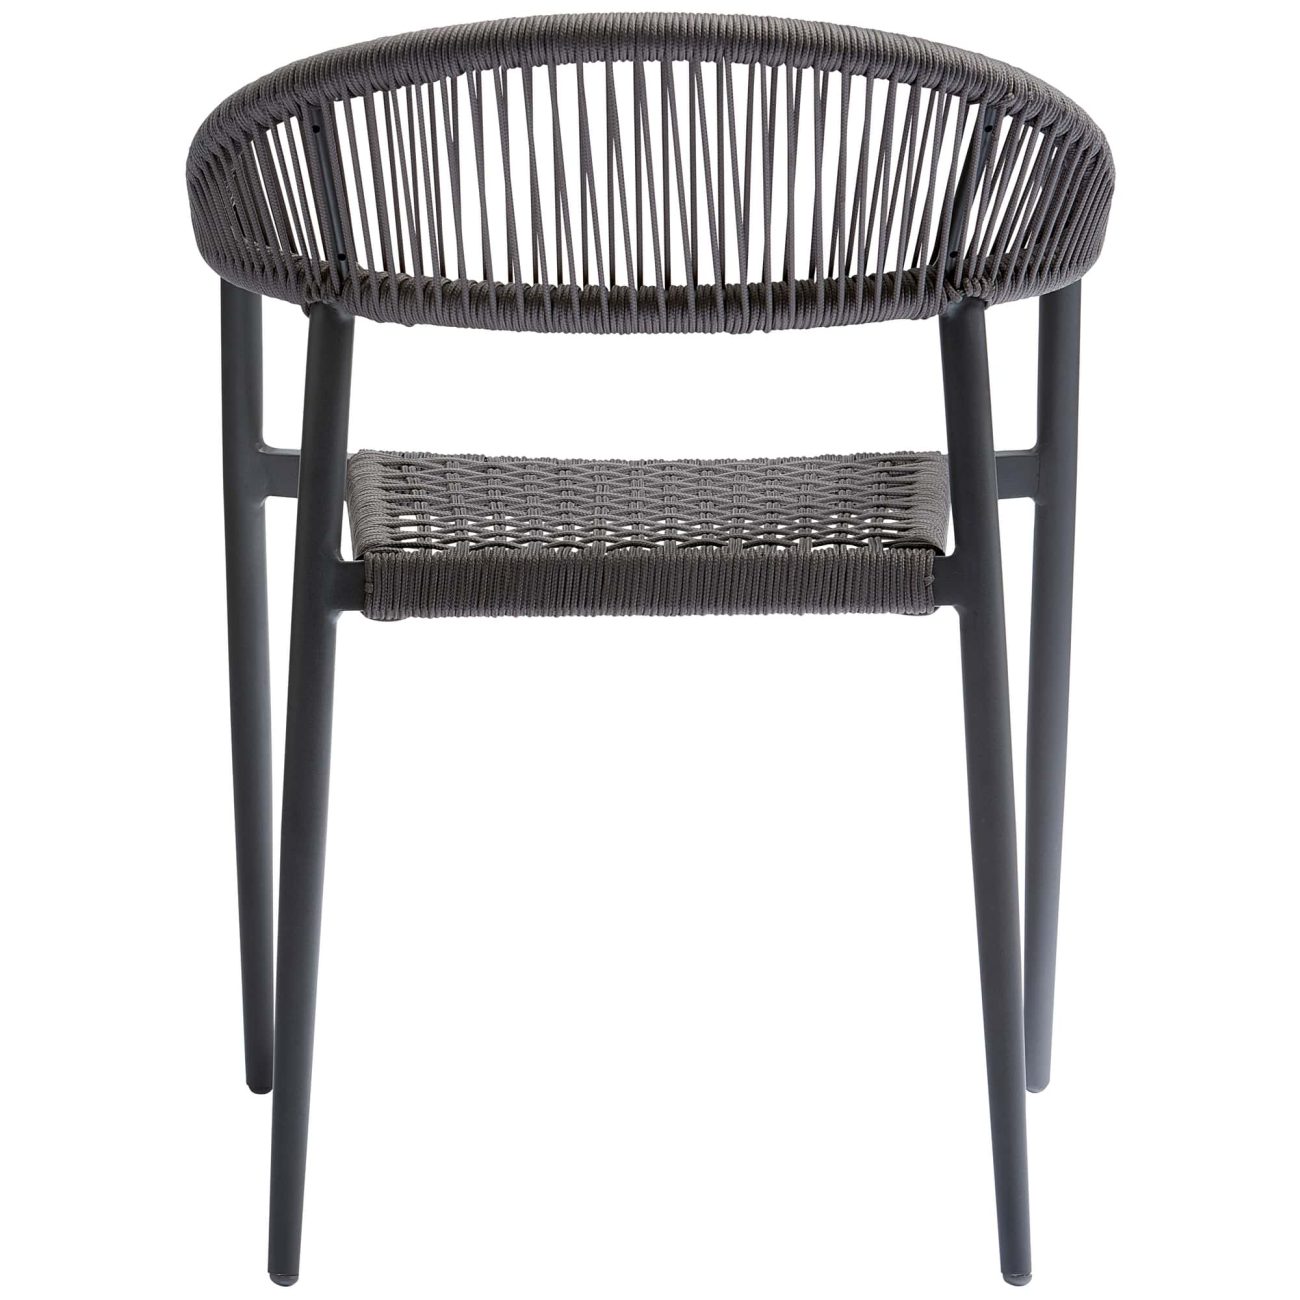 Der Gartenstuhl Yellow überzeugt mit seinem modernen Design. Gefertigt wurde er aus geflochtenem Seil, welches einen dunkelgrauen Farbton besitzt. Das Gestell ist aus Aluminium und hat eine dunkelgraue Farbe. Der Stuhl besitzt eine Sitzhöhe von 45 cm.